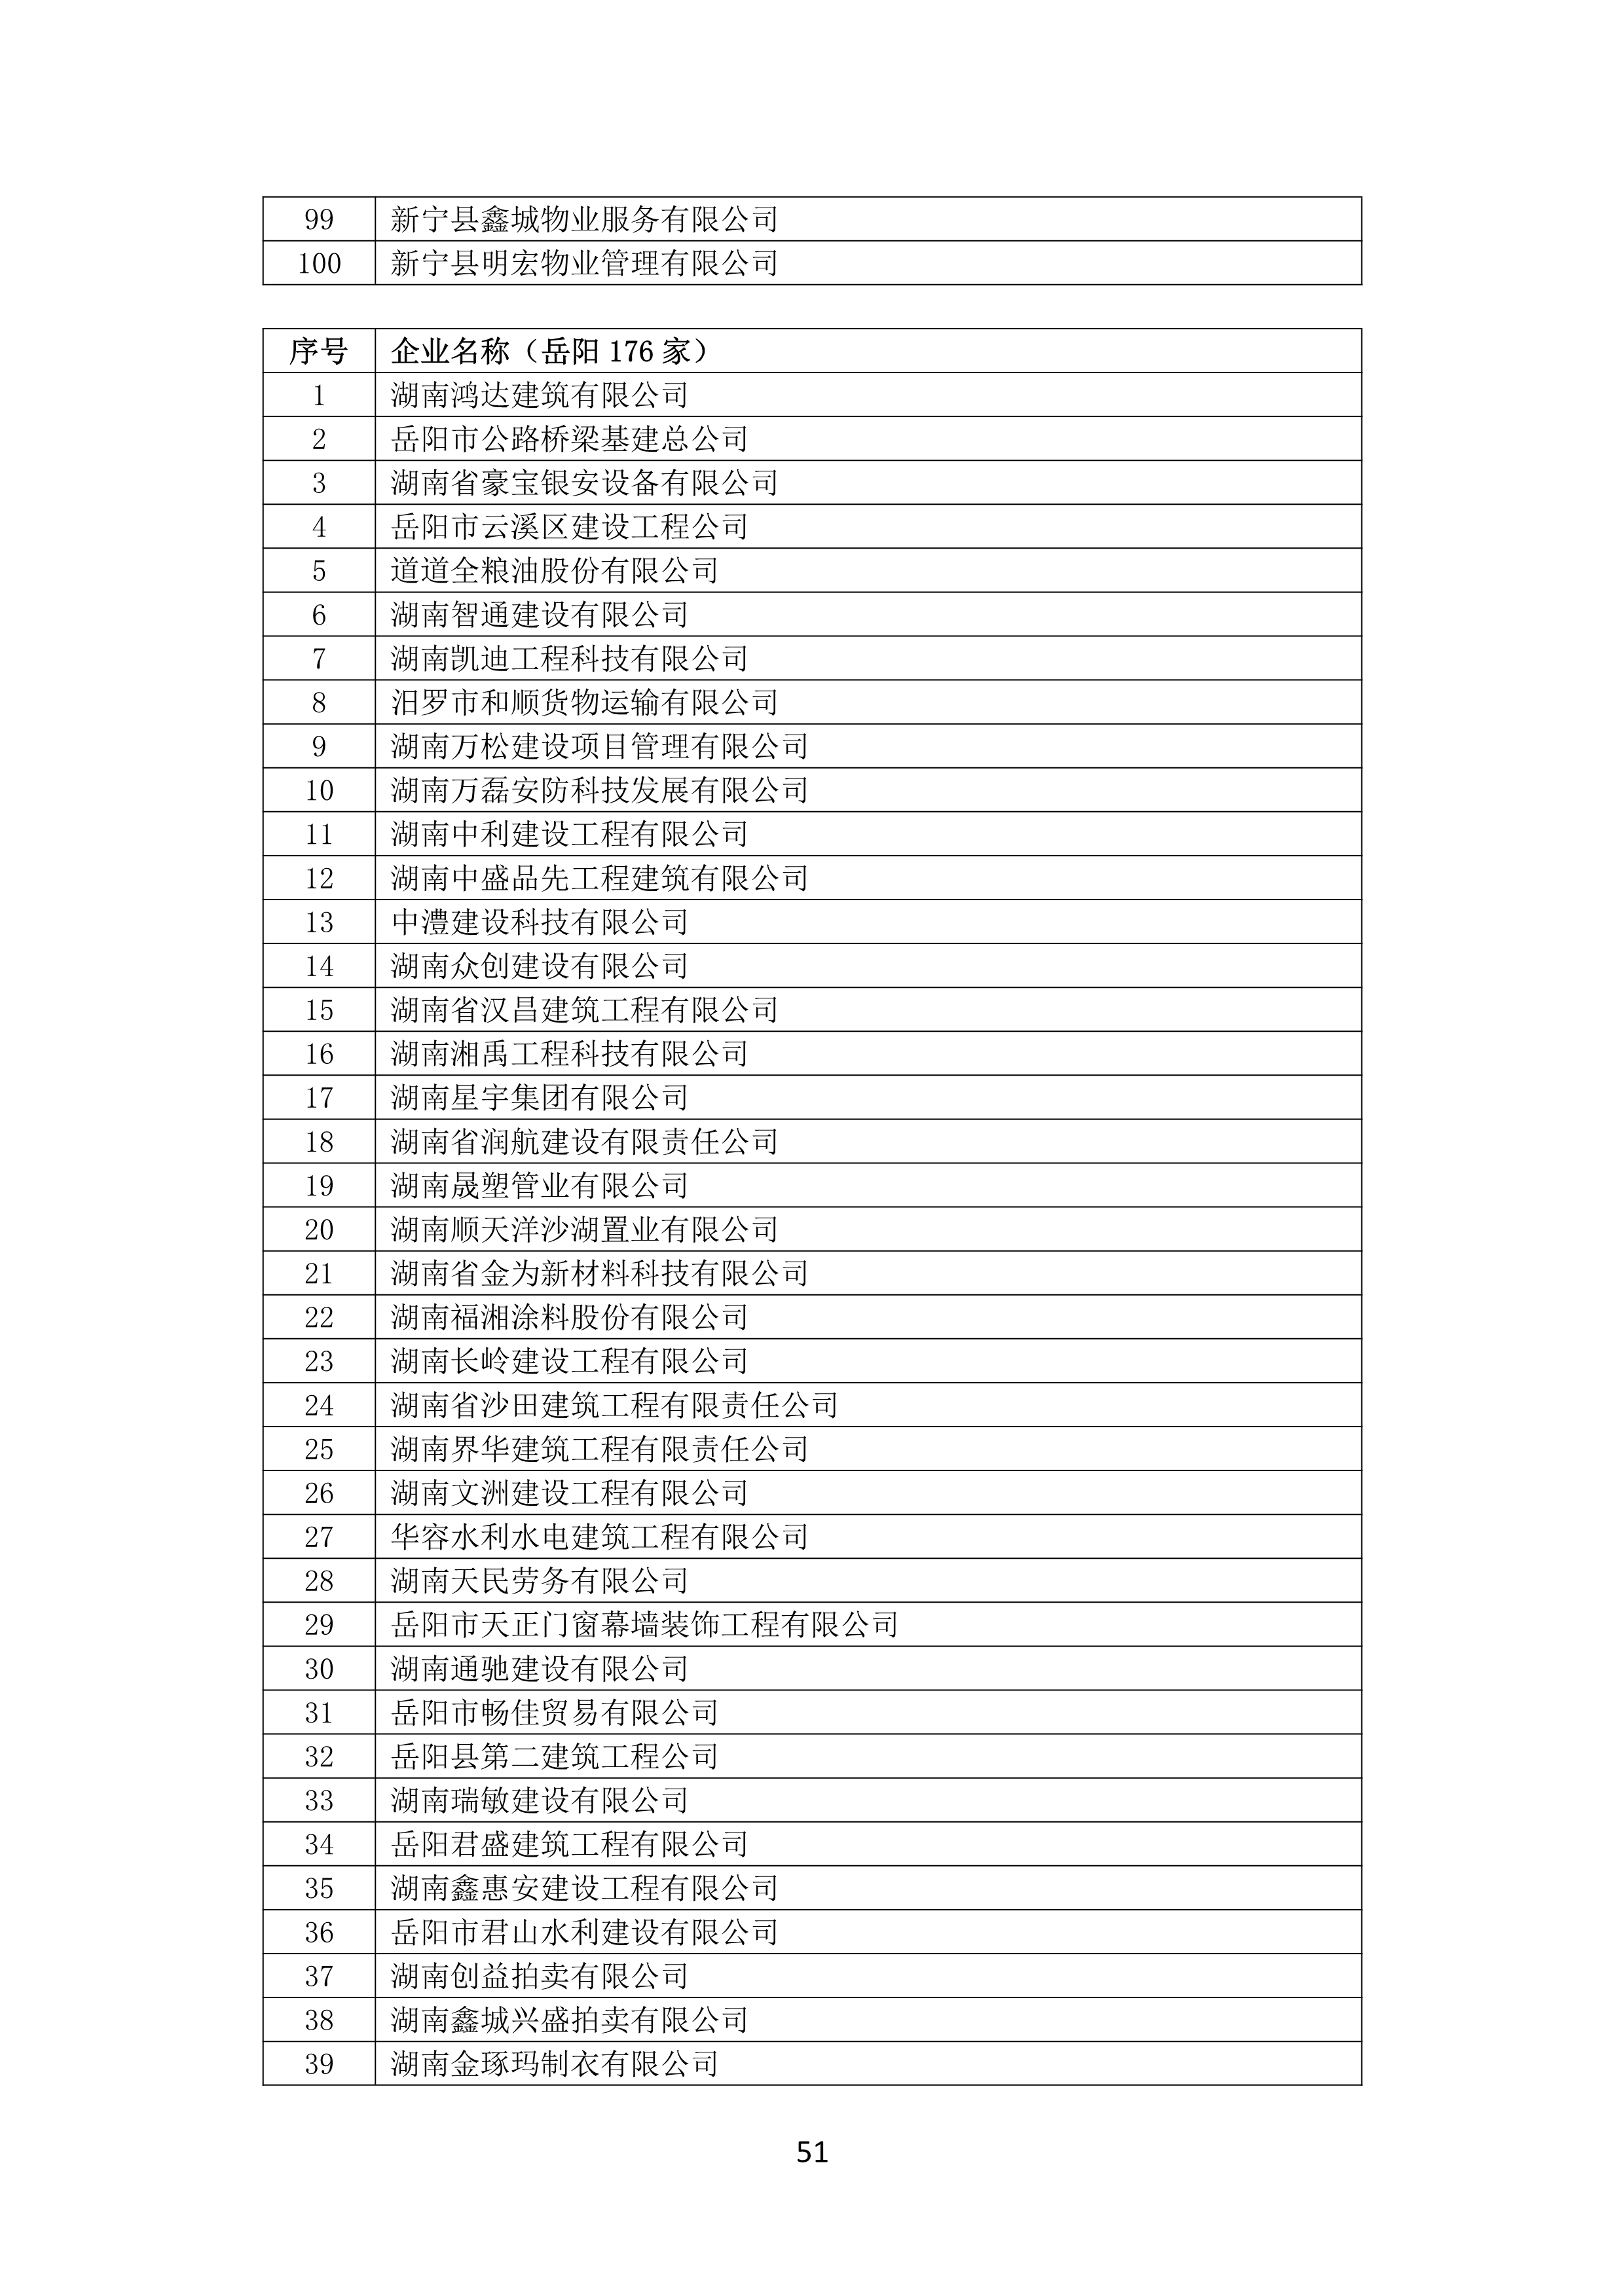 2021 年(nián)度湖南省守合同重信用企業名單_52.png